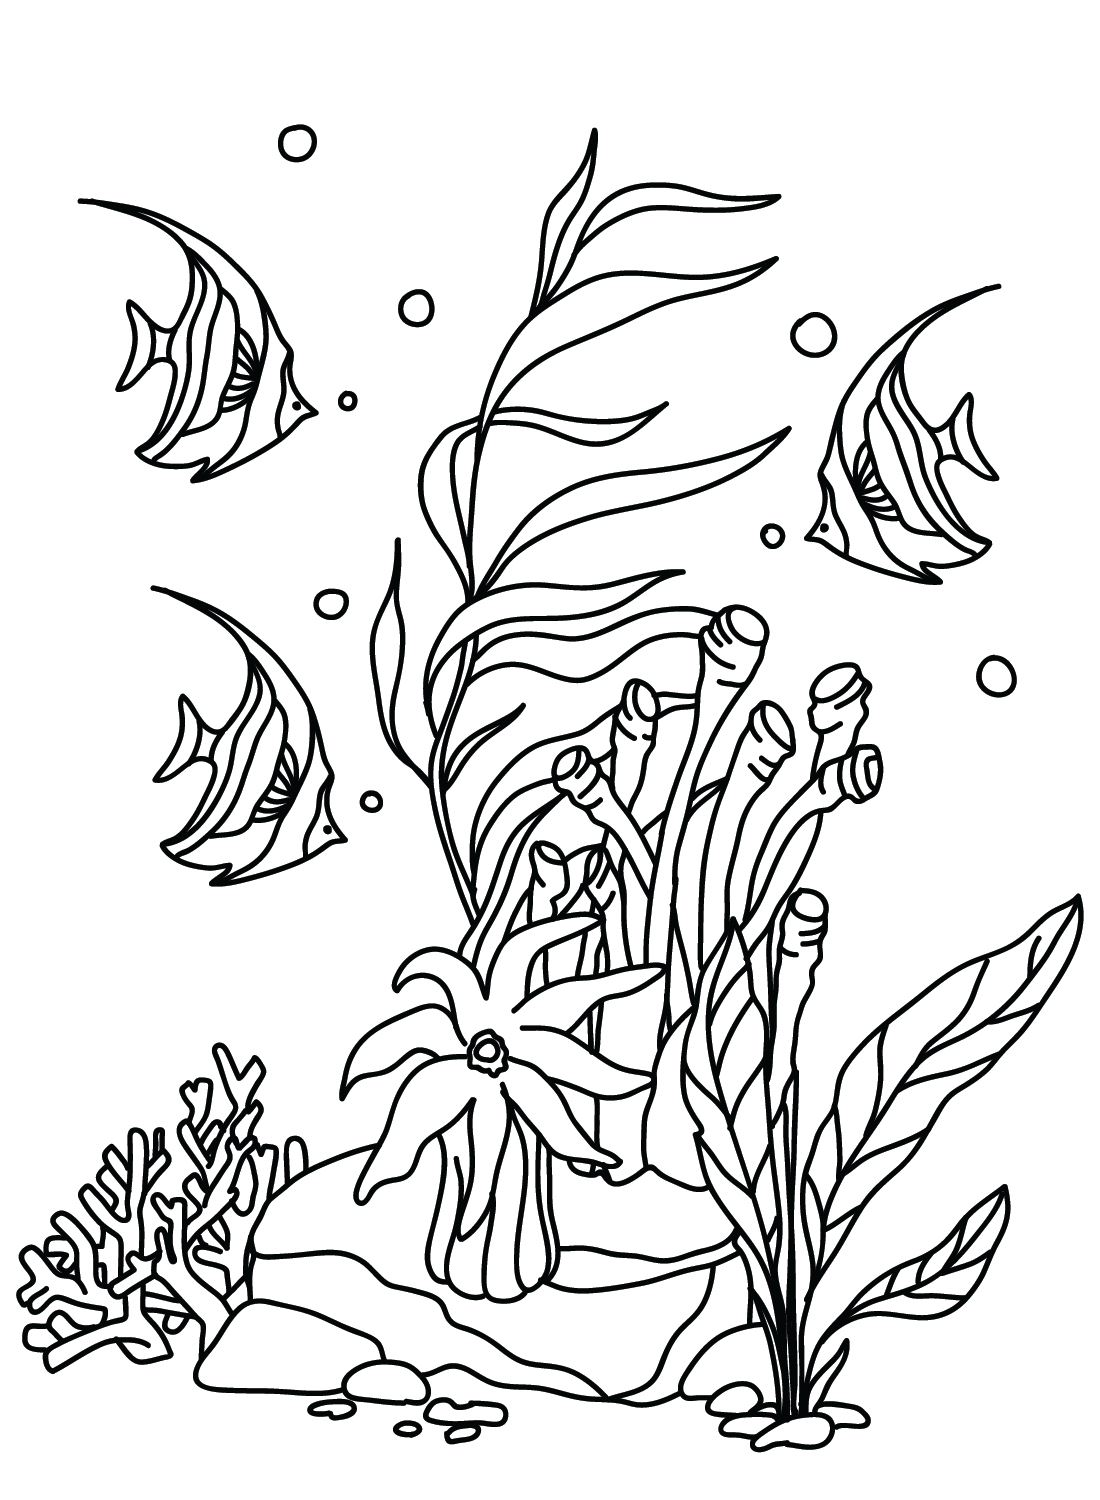 Der Pennant Coralfish von Pennant Coralfish